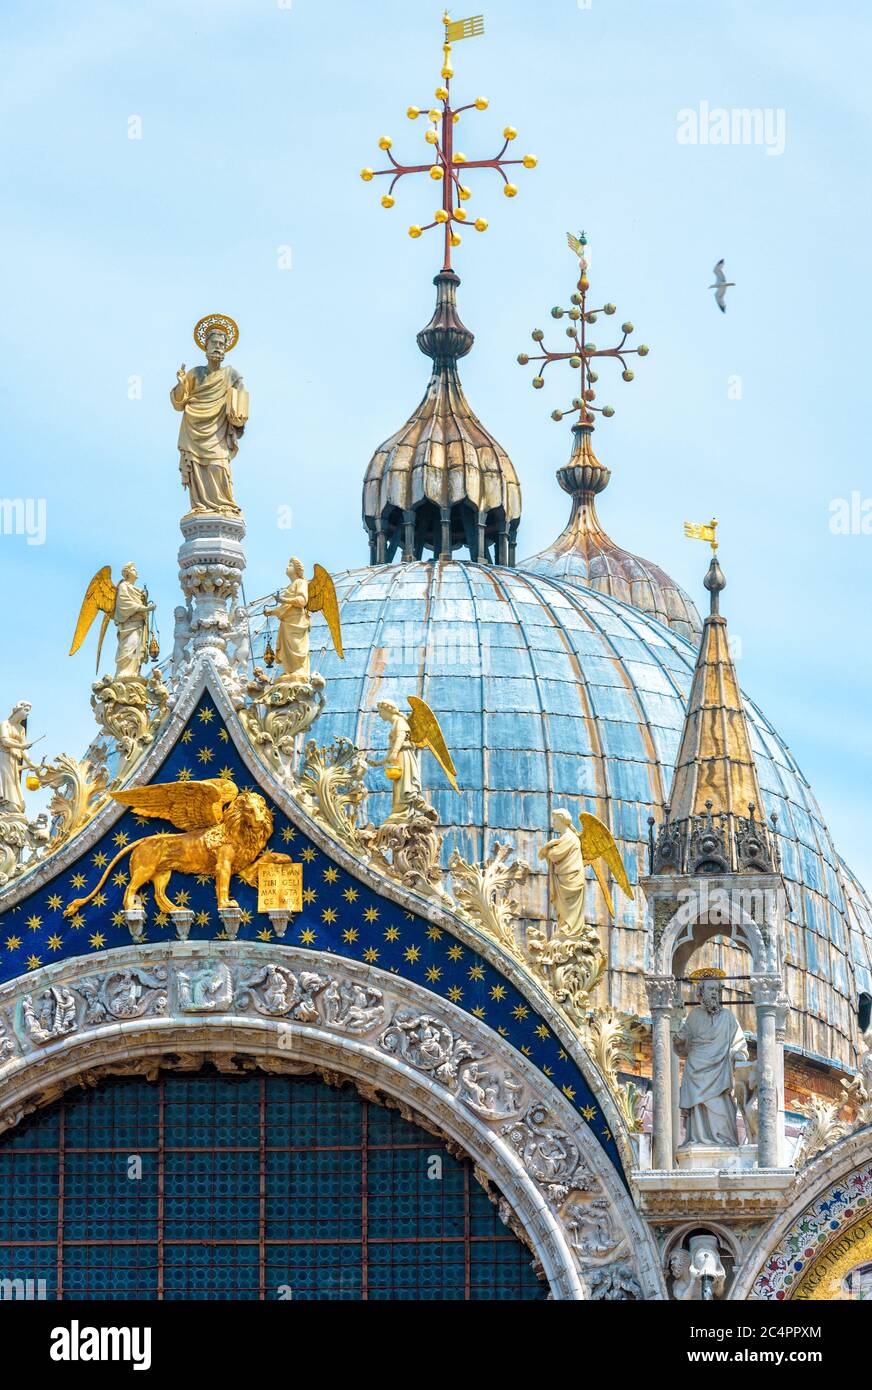 Primo piano della Basilica di San Marco, edificio rinascimentale di Venezia. La cattedrale medievale di San Marco è la principale attrazione turistica di Venezia. Facciata di lusso Foto Stock